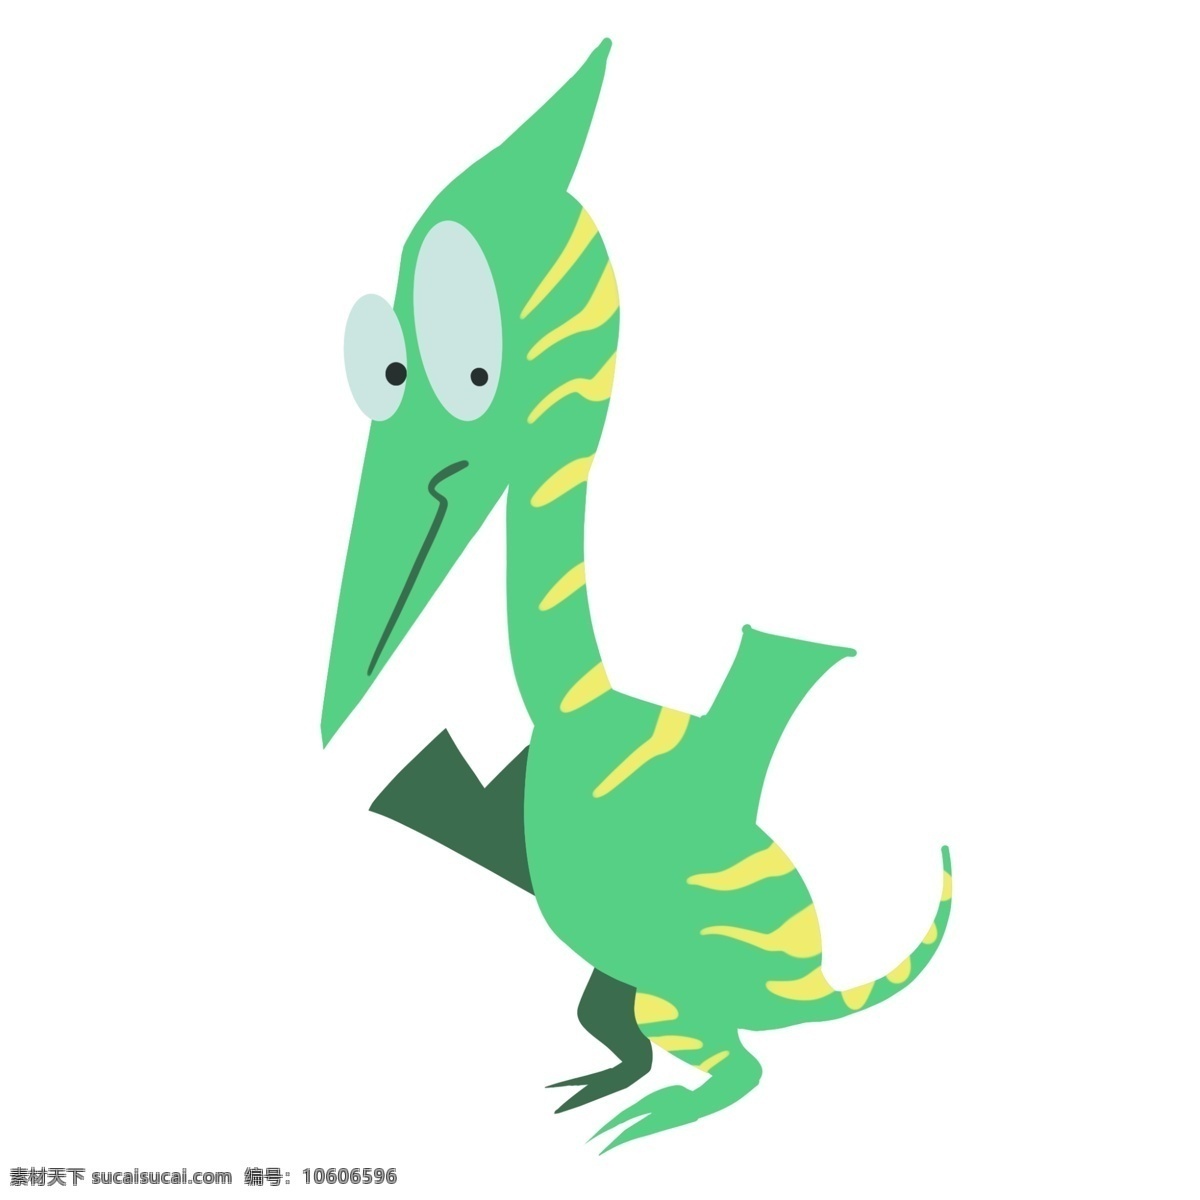 翼 龙 形象 可爱 插画 翼龙 恐龙卡通形象 翼龙形象 翼龙恐龙世界 卡通可爱恐龙 独脚恐龙 可爱插画